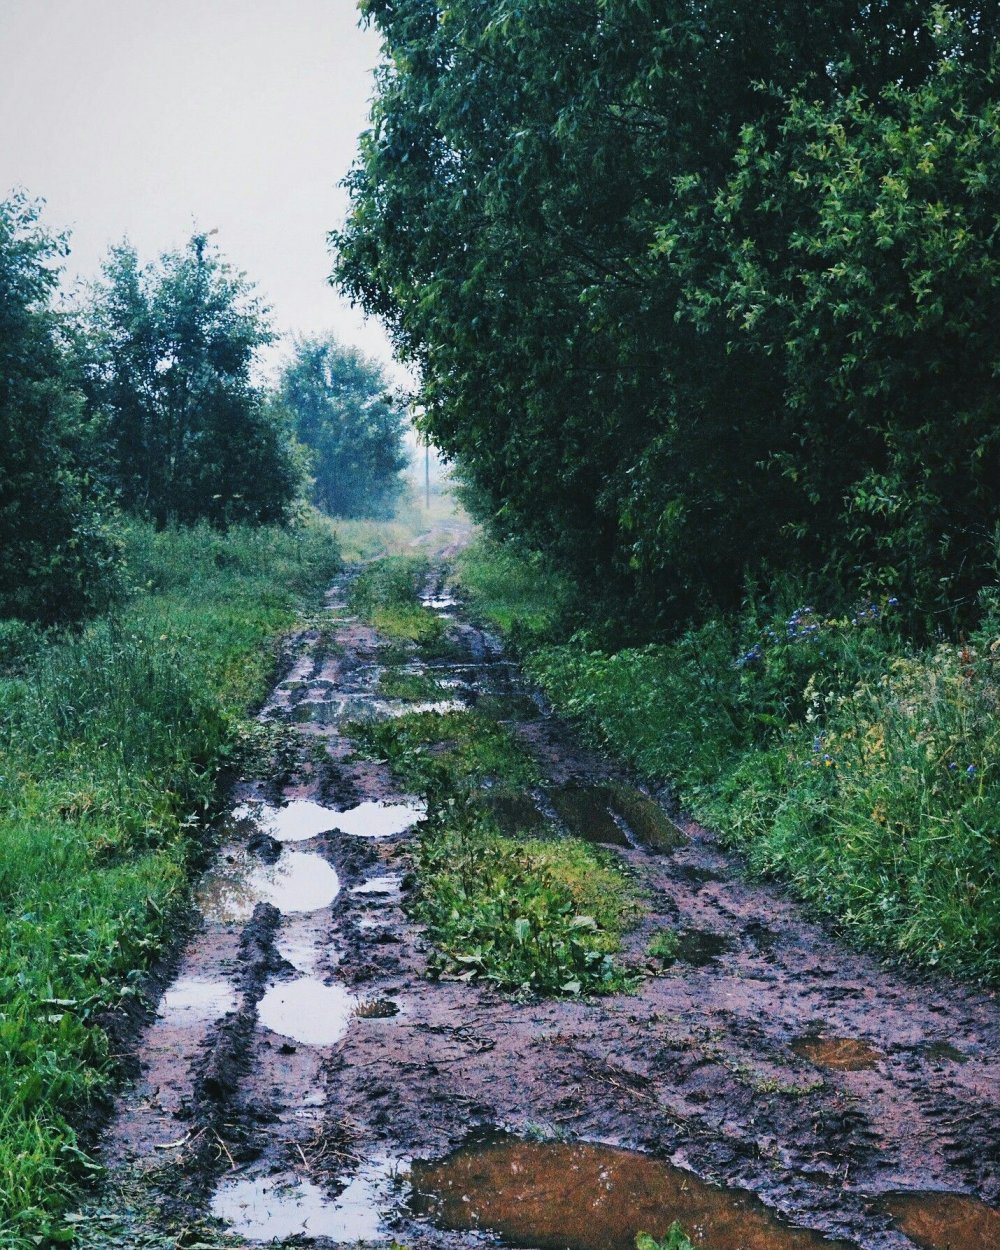 Дорога в деревне